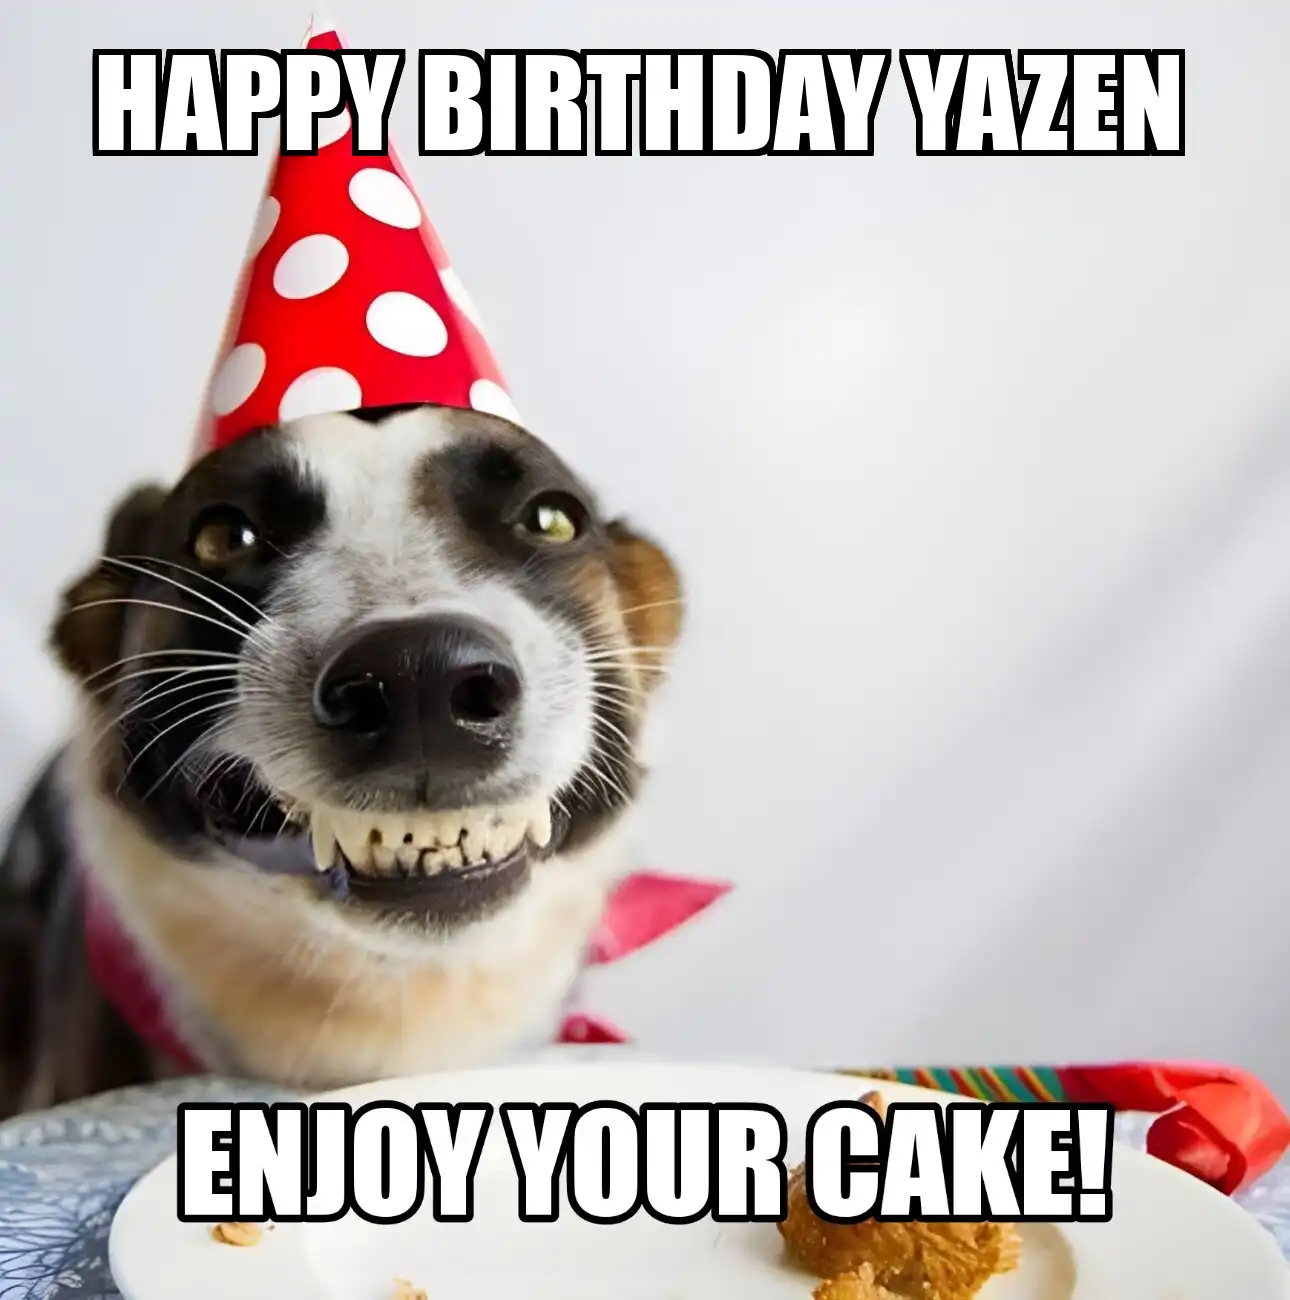 Happy Birthday Yazen Enjoy Your Cake Dog Meme